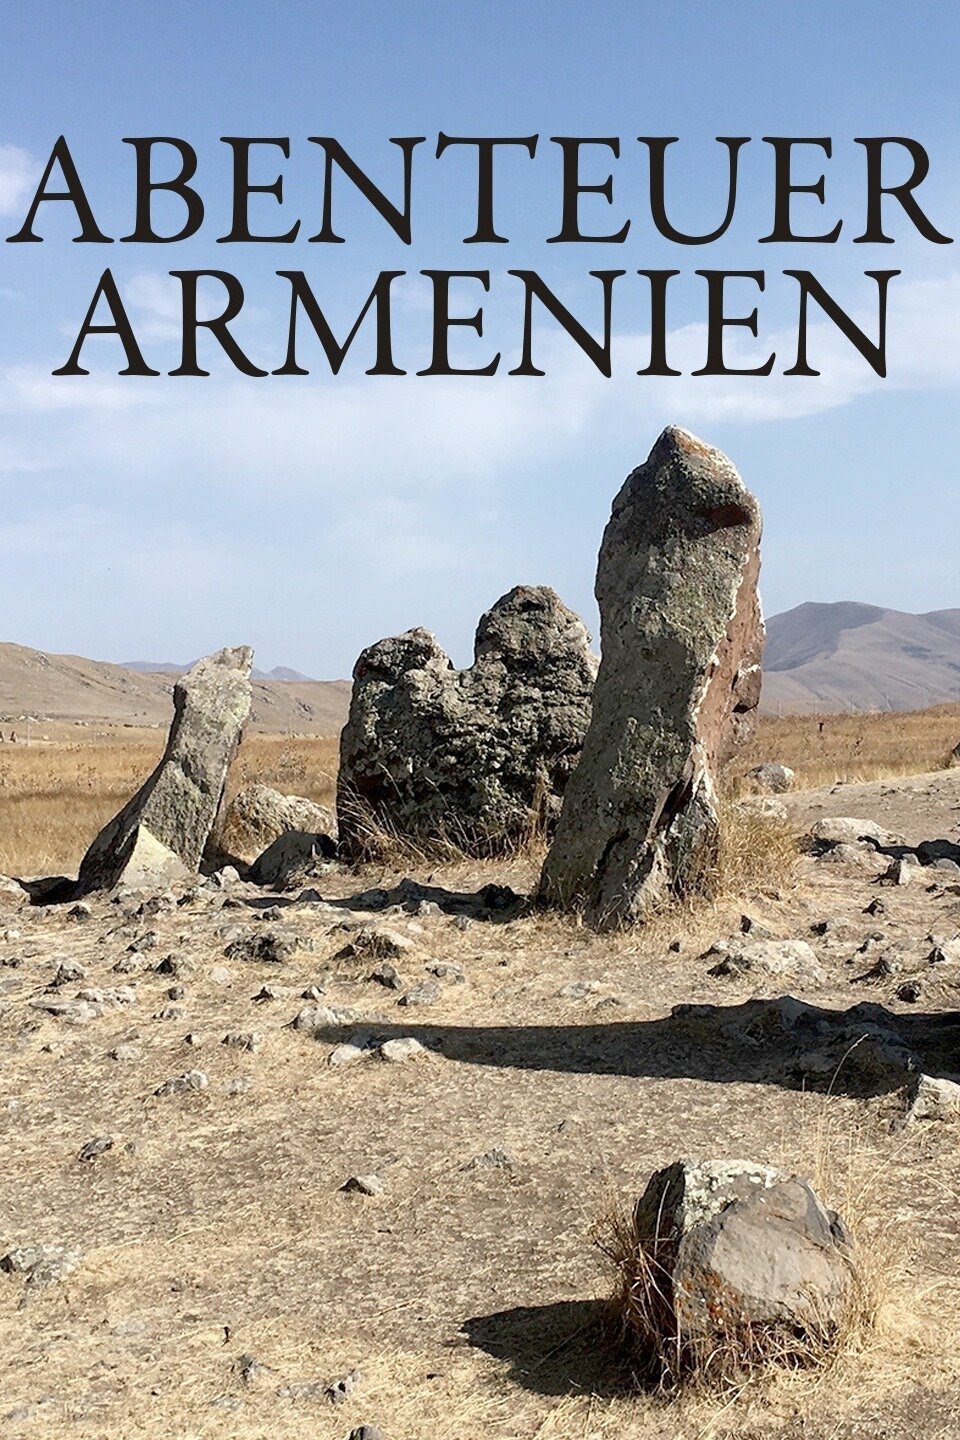 DE - Abenteuer Armenien (2020)